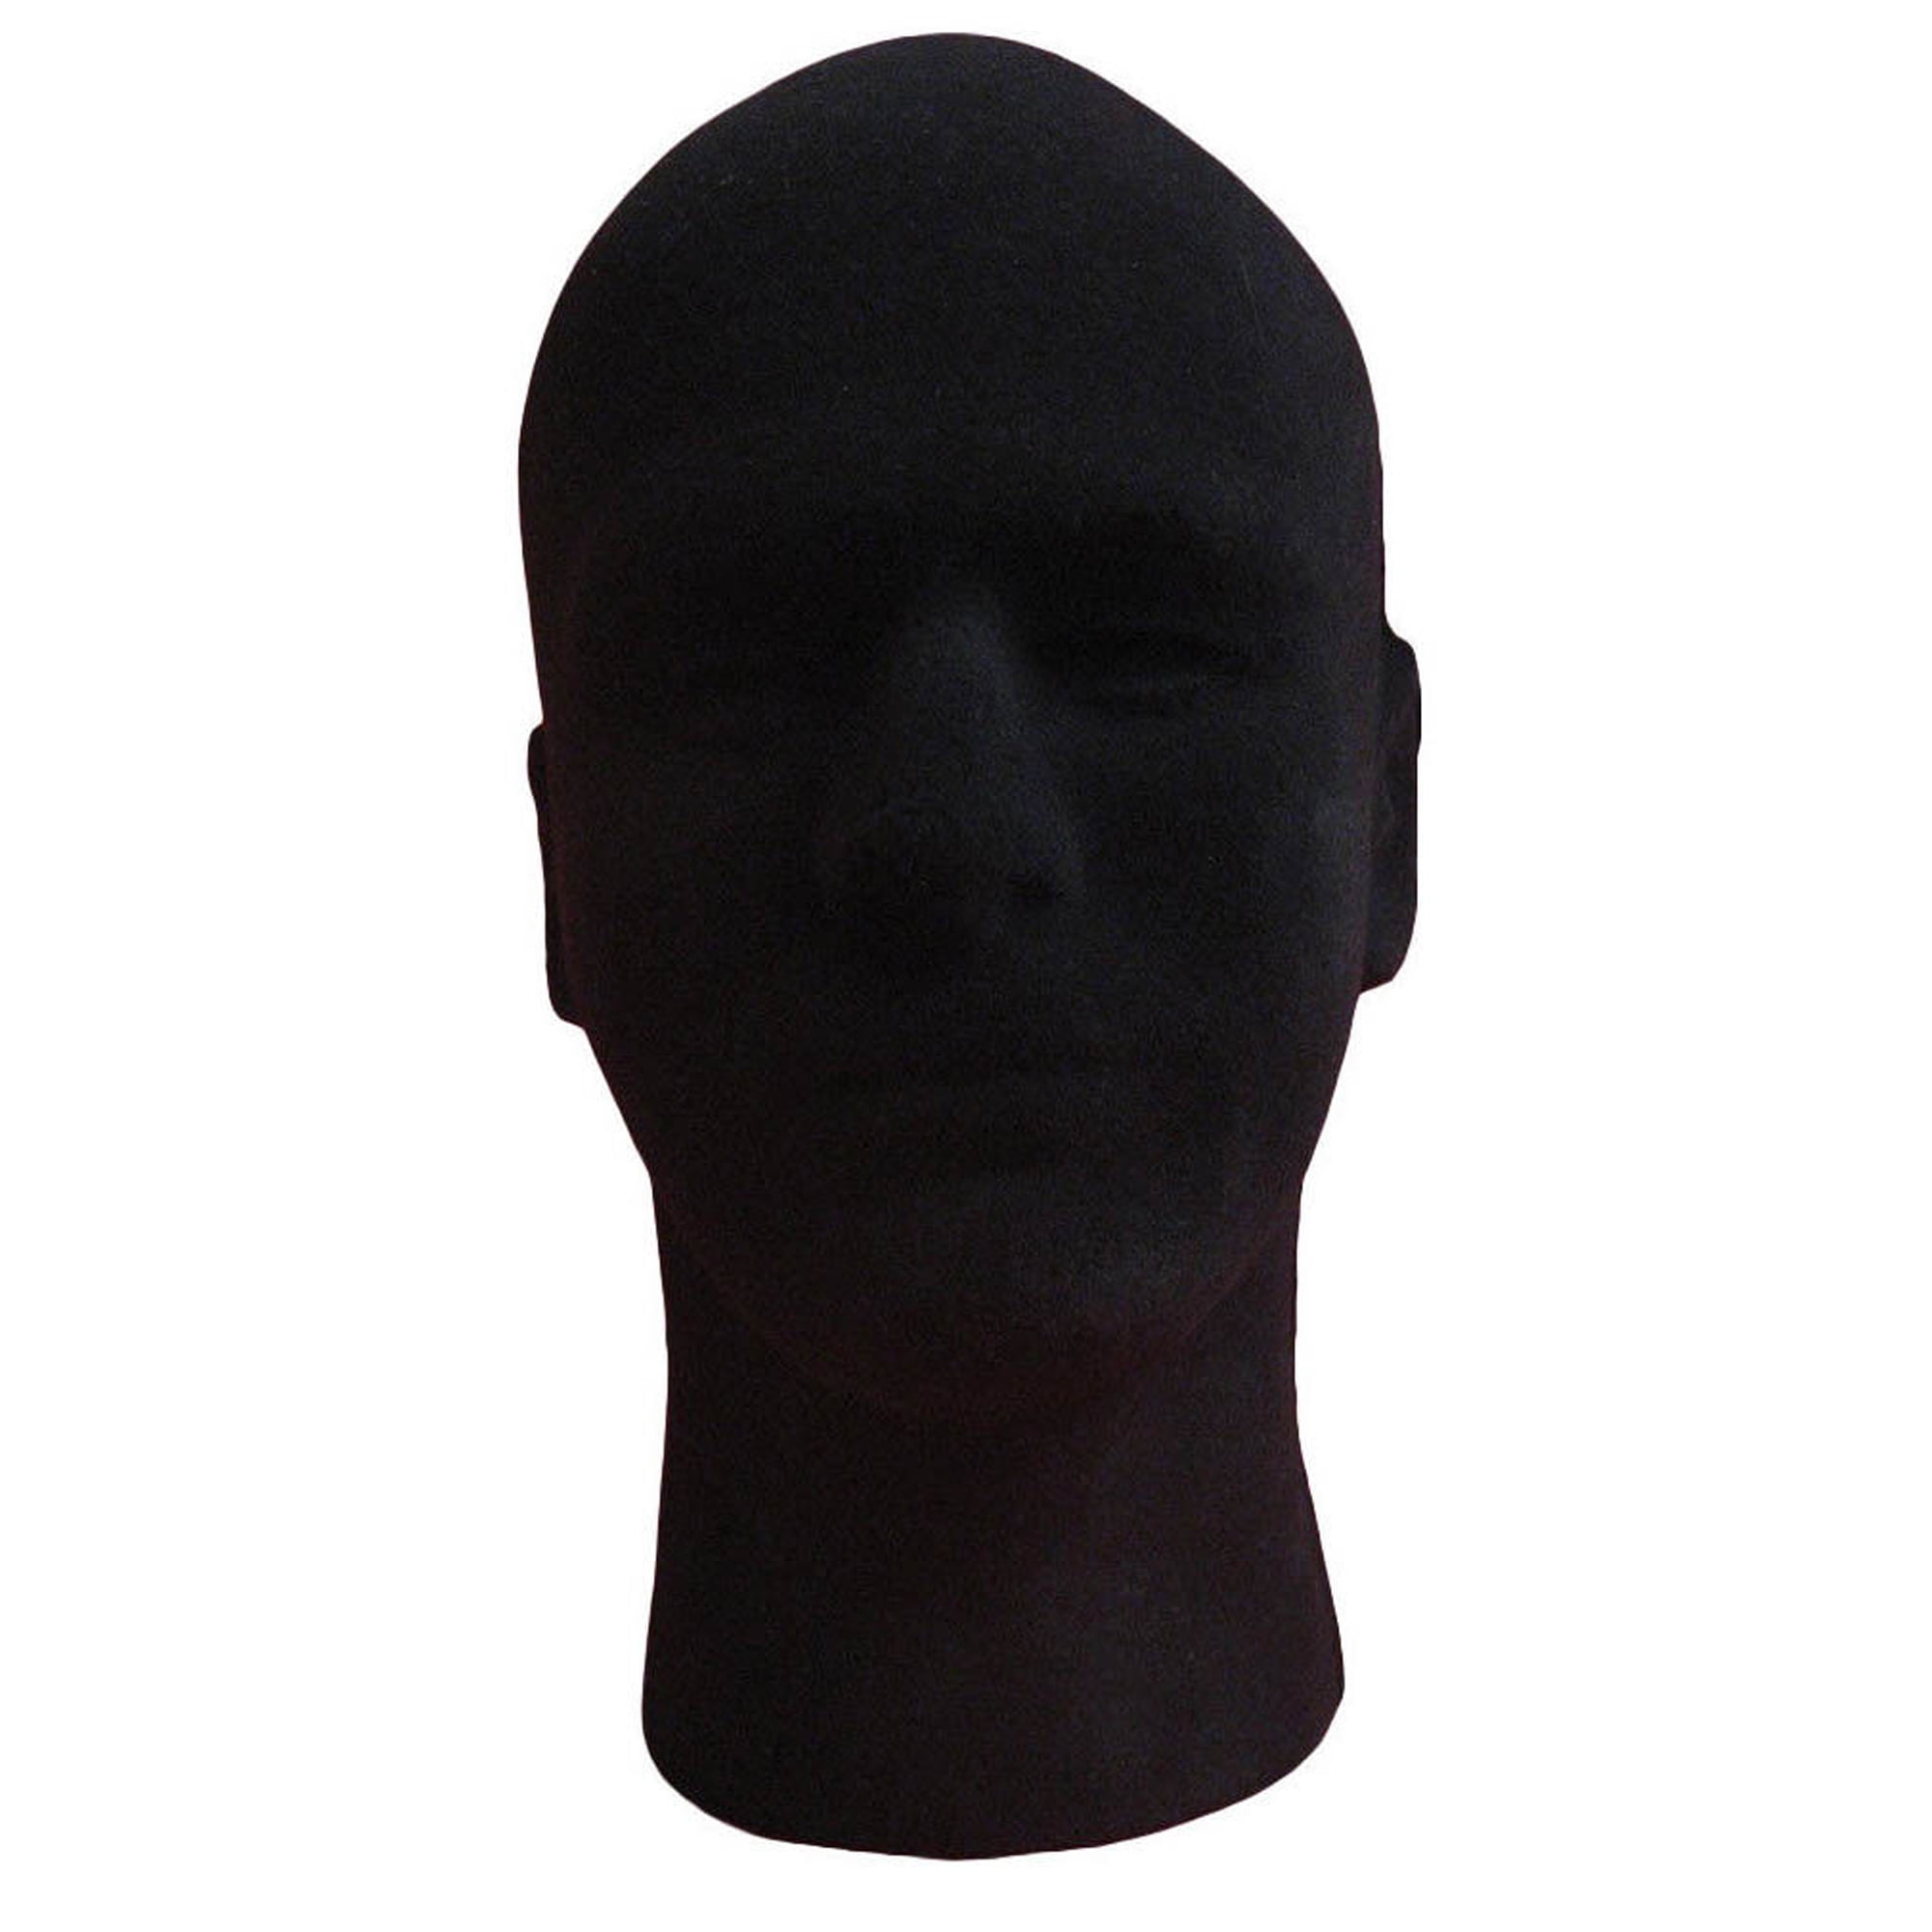 Male Mannequin Styrofoam Foam Manikin Head Model Wig Hat Cap Display Stand 